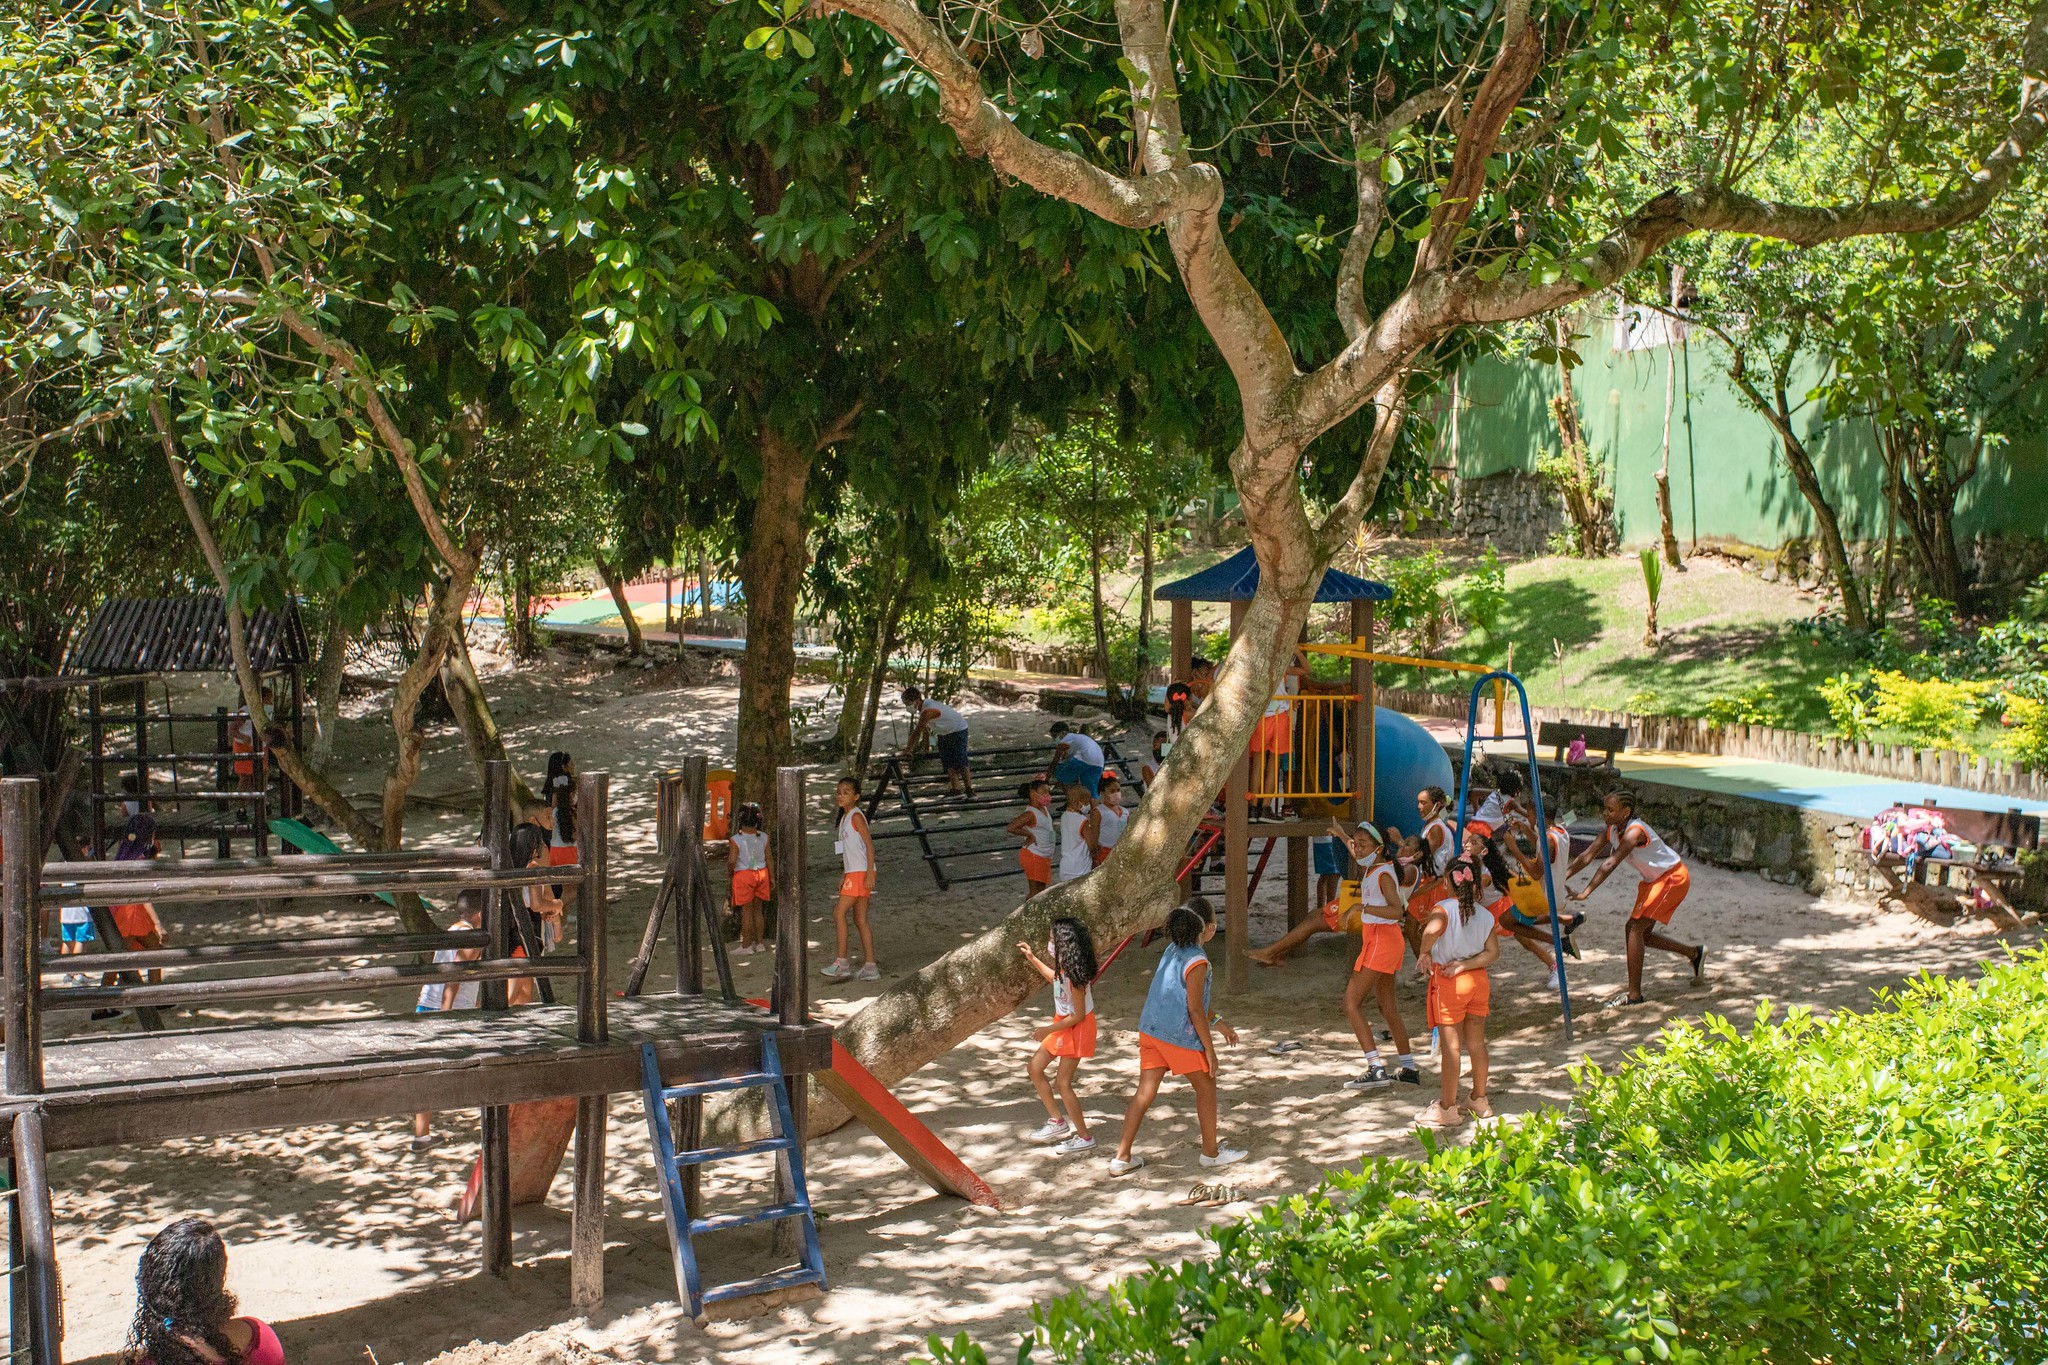 Grande Sarau reunir� diversas atra��es culturais no Parque Ecol�gico de Lauro de Freitas nesta sexta (27)